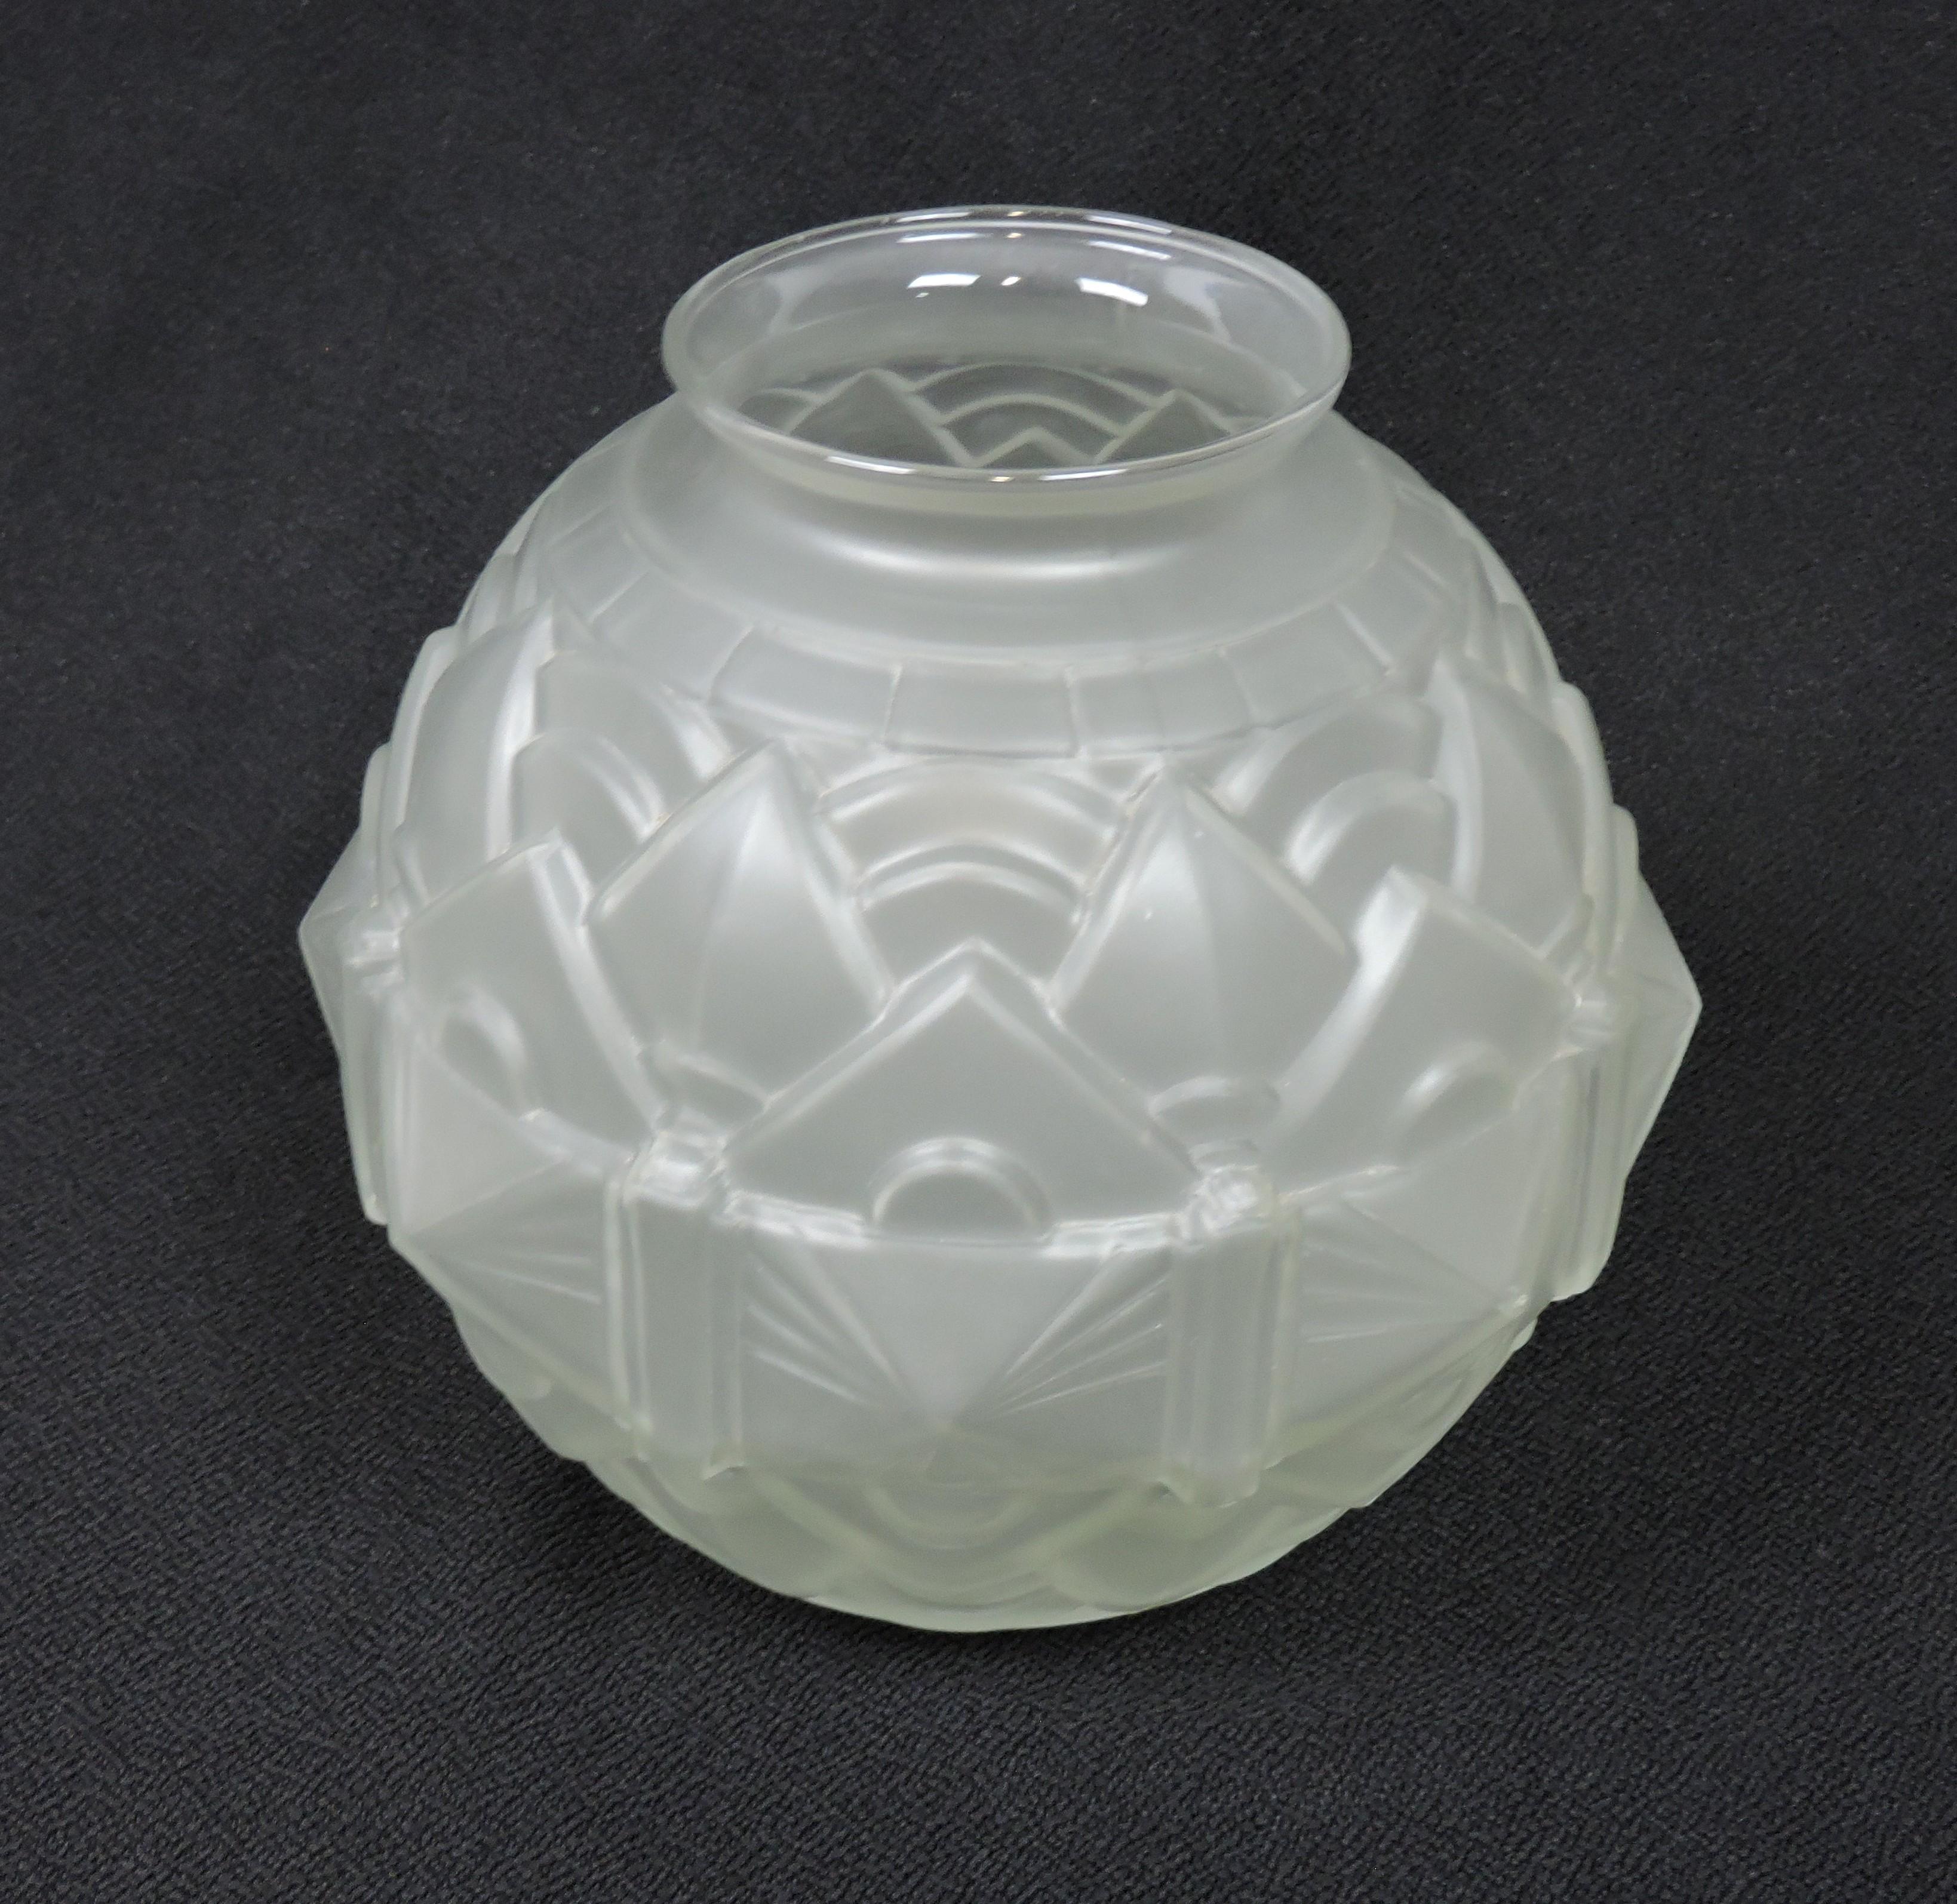 Schöne Französisch Art Deco Form geblasenem Glas Vase. Diese Vase hat eine Kugelform mit einem wunderschönen geometrischen Reliefmuster und einer glatten, säuremattierten Oberfläche auf Klarglas.